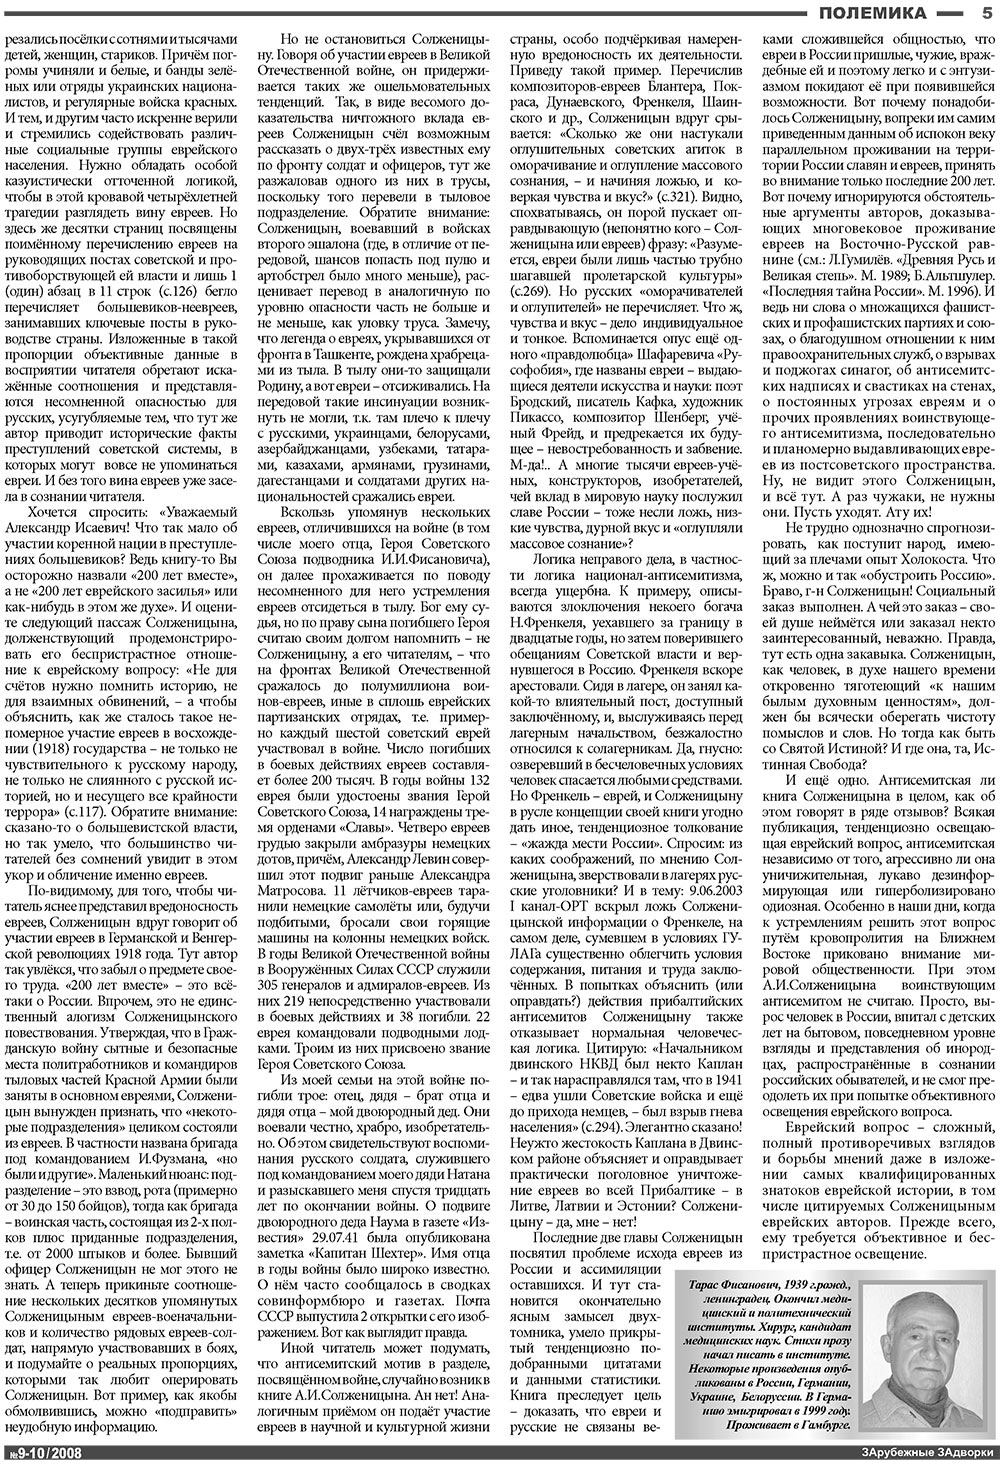 Известия BW, газета. 2008 №10 стр.5